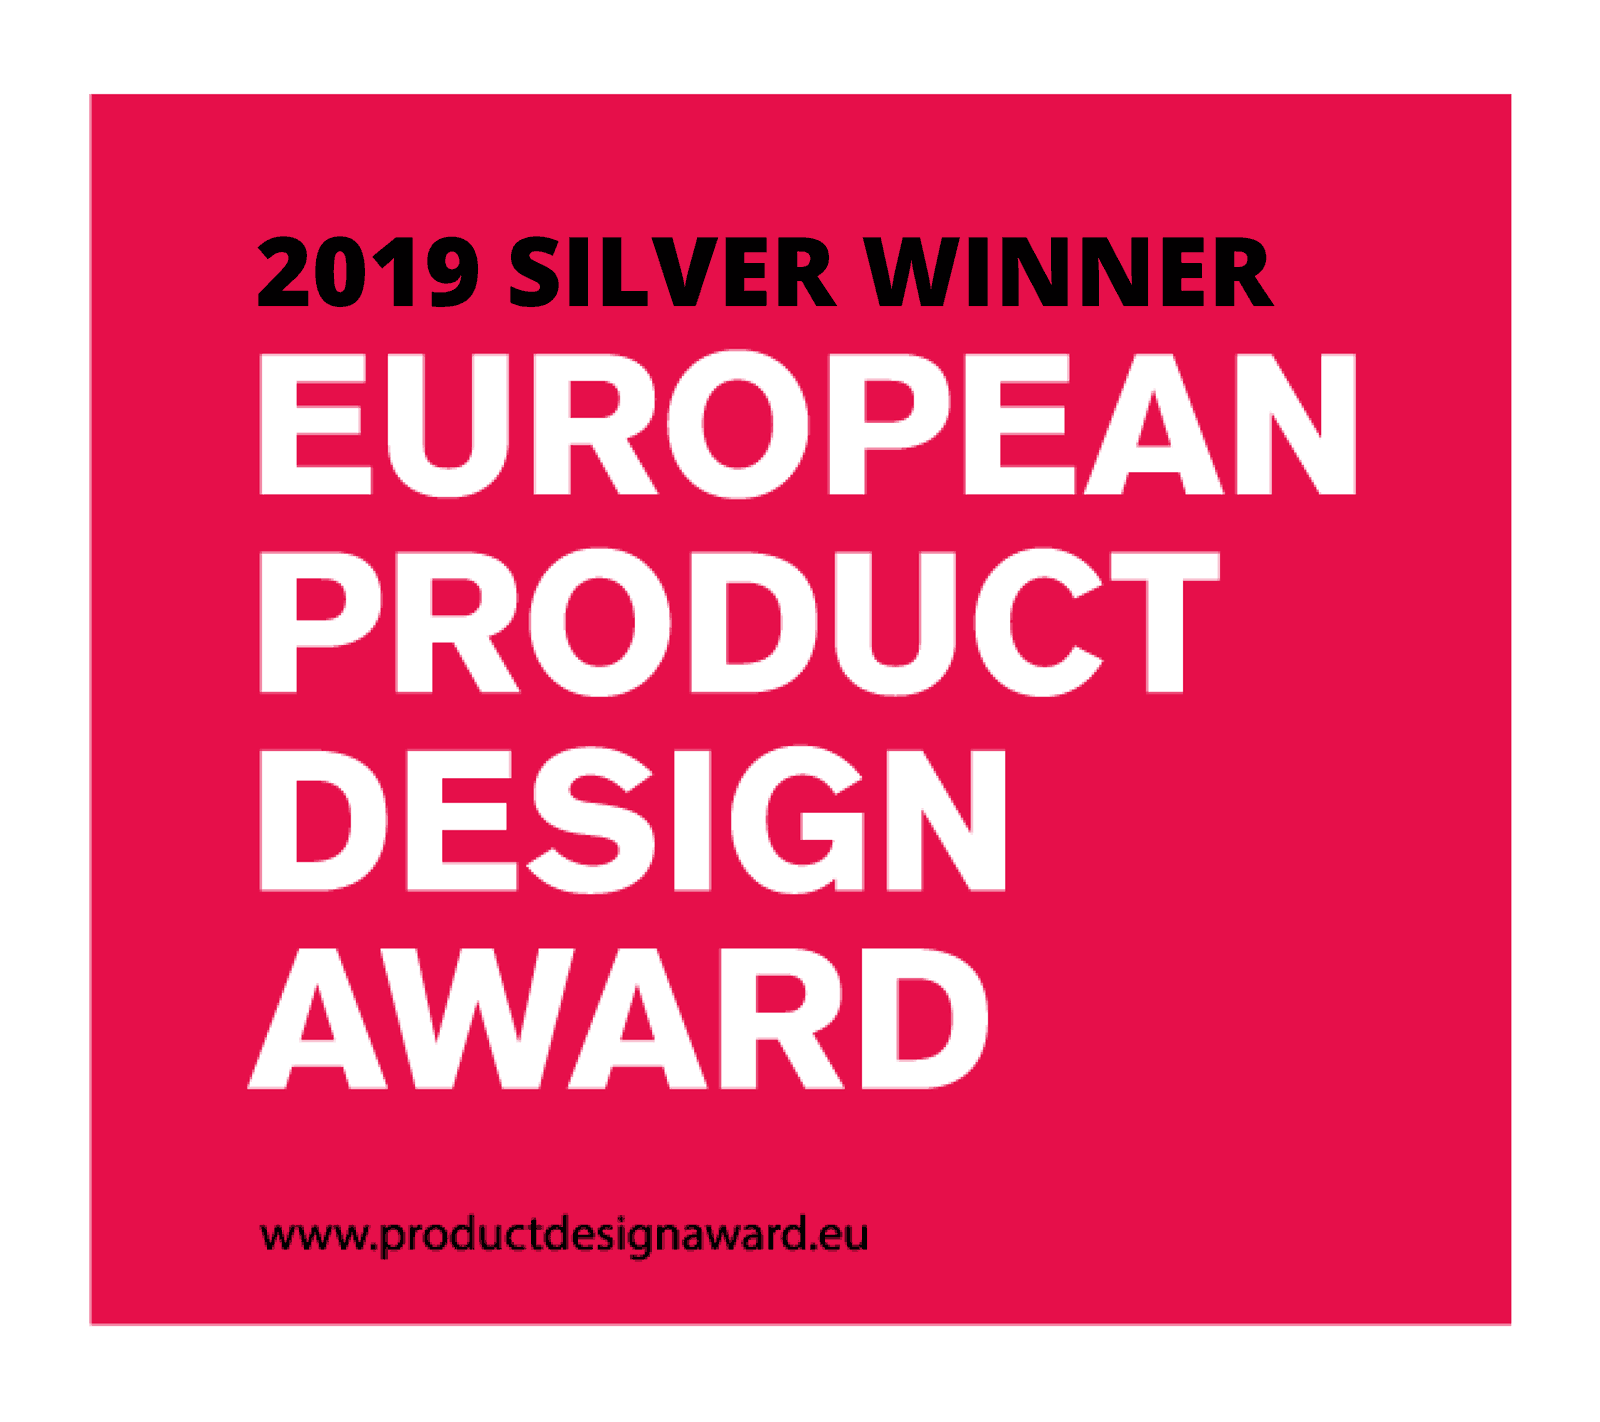 European Product Design Award 2019 silver für die FavoMove-Studie